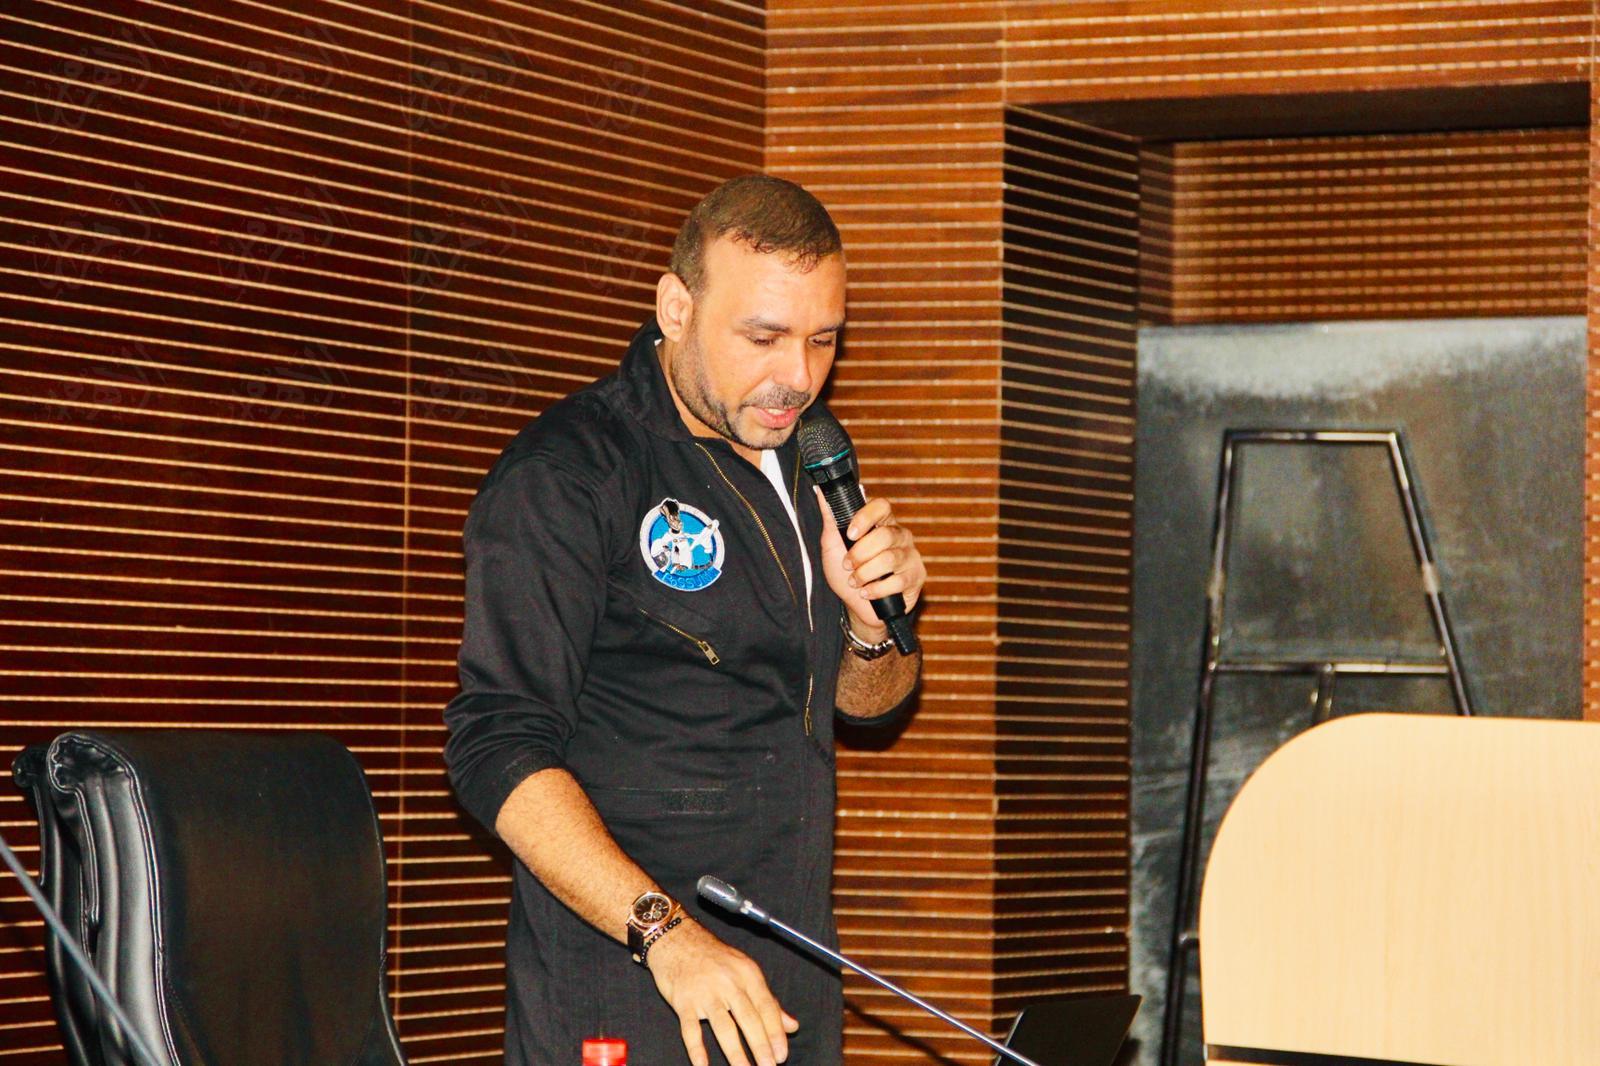 أحمد فريد عالم الفضاء المصري